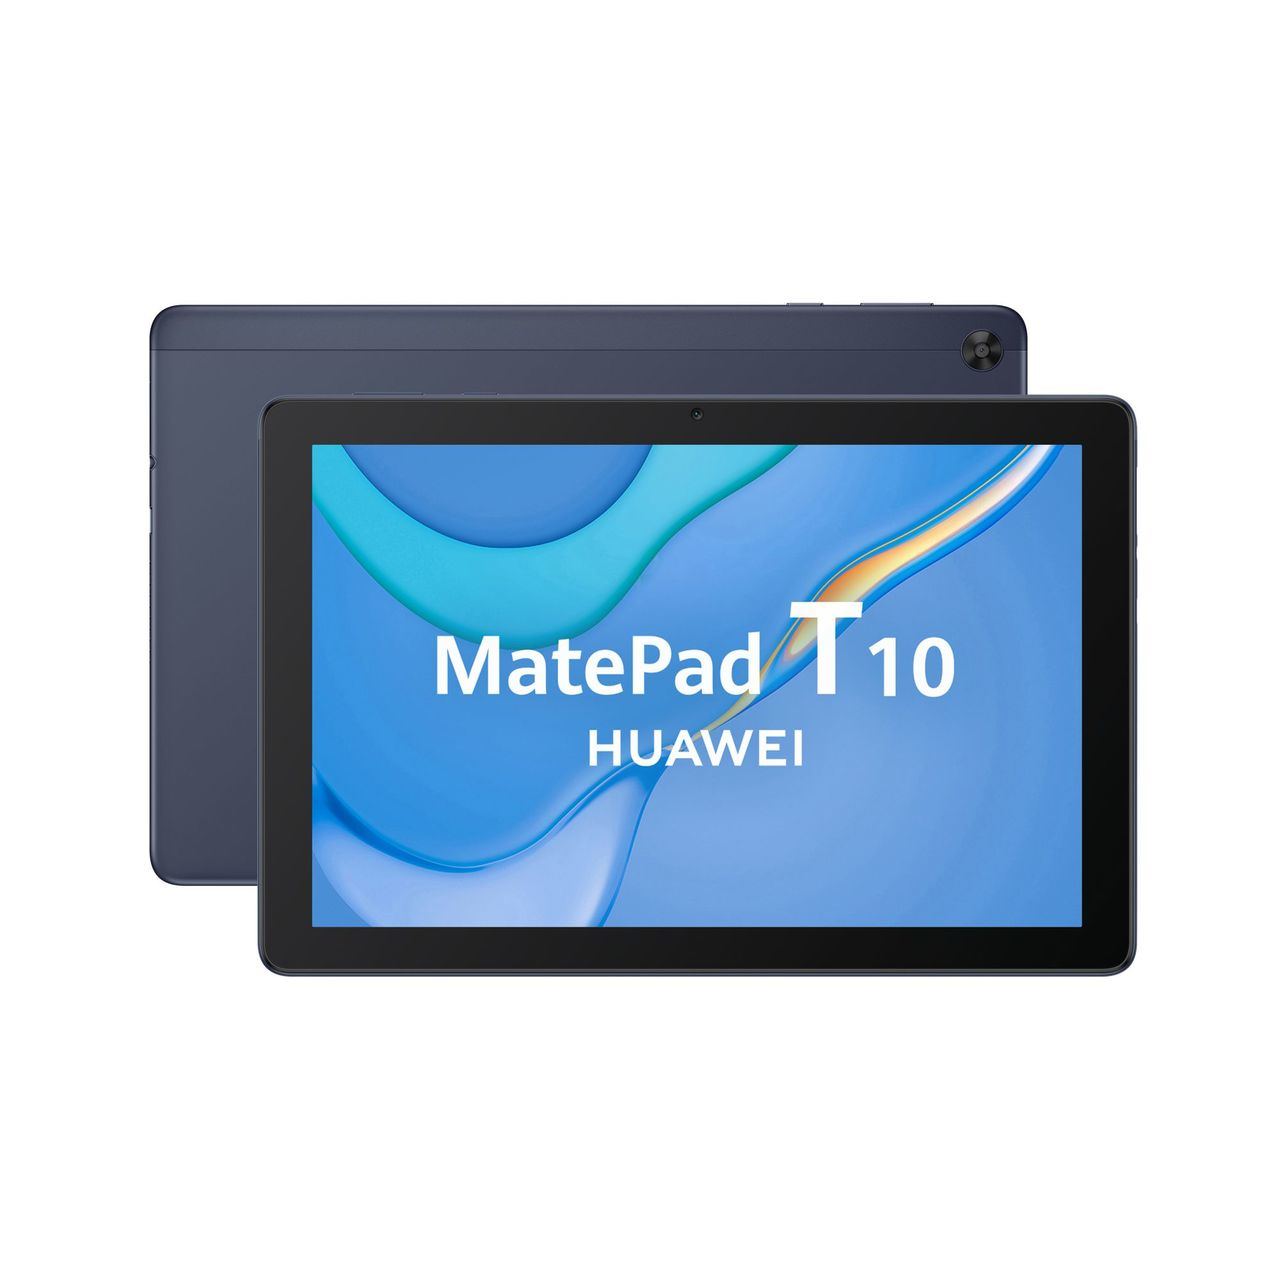 Huawei presenta hoy en España la nueva MatePad T10